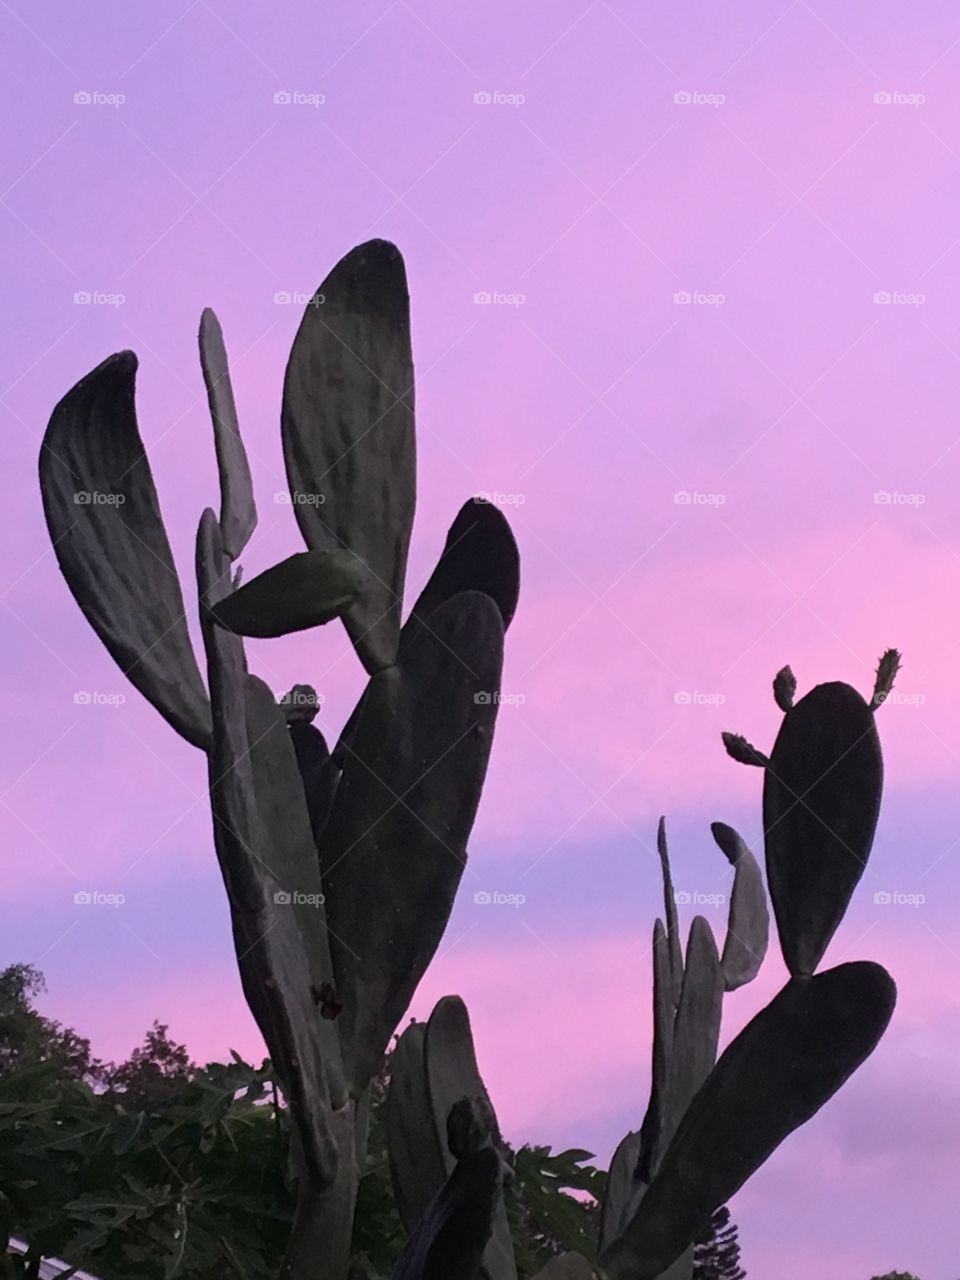 Cactus sunset 